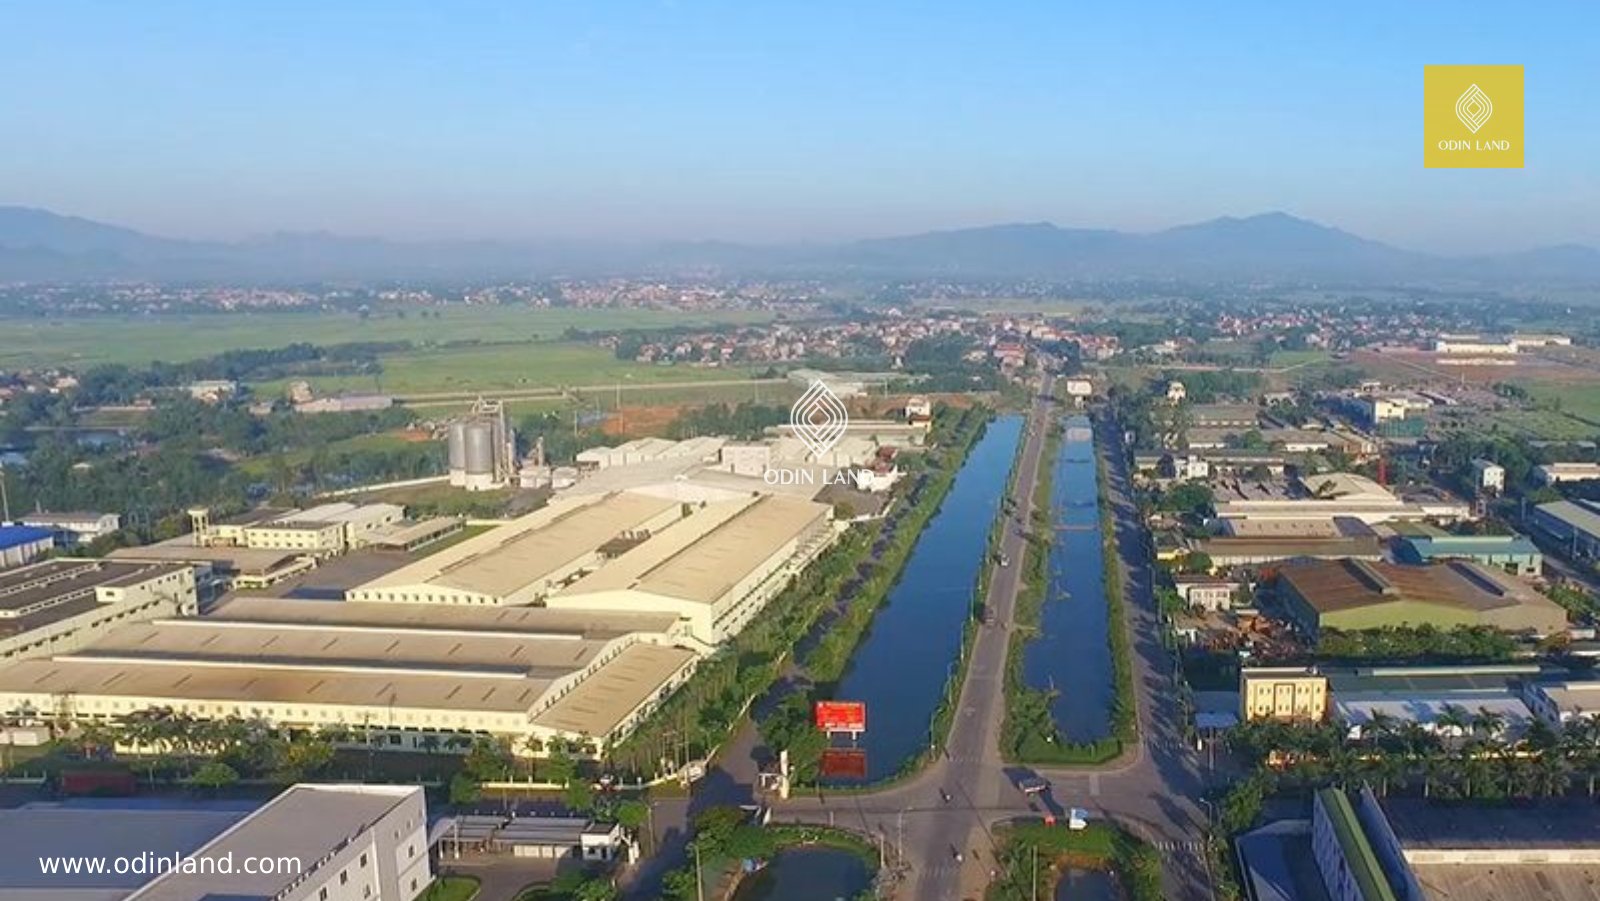 Khu công nghiệp Phú Nghĩa